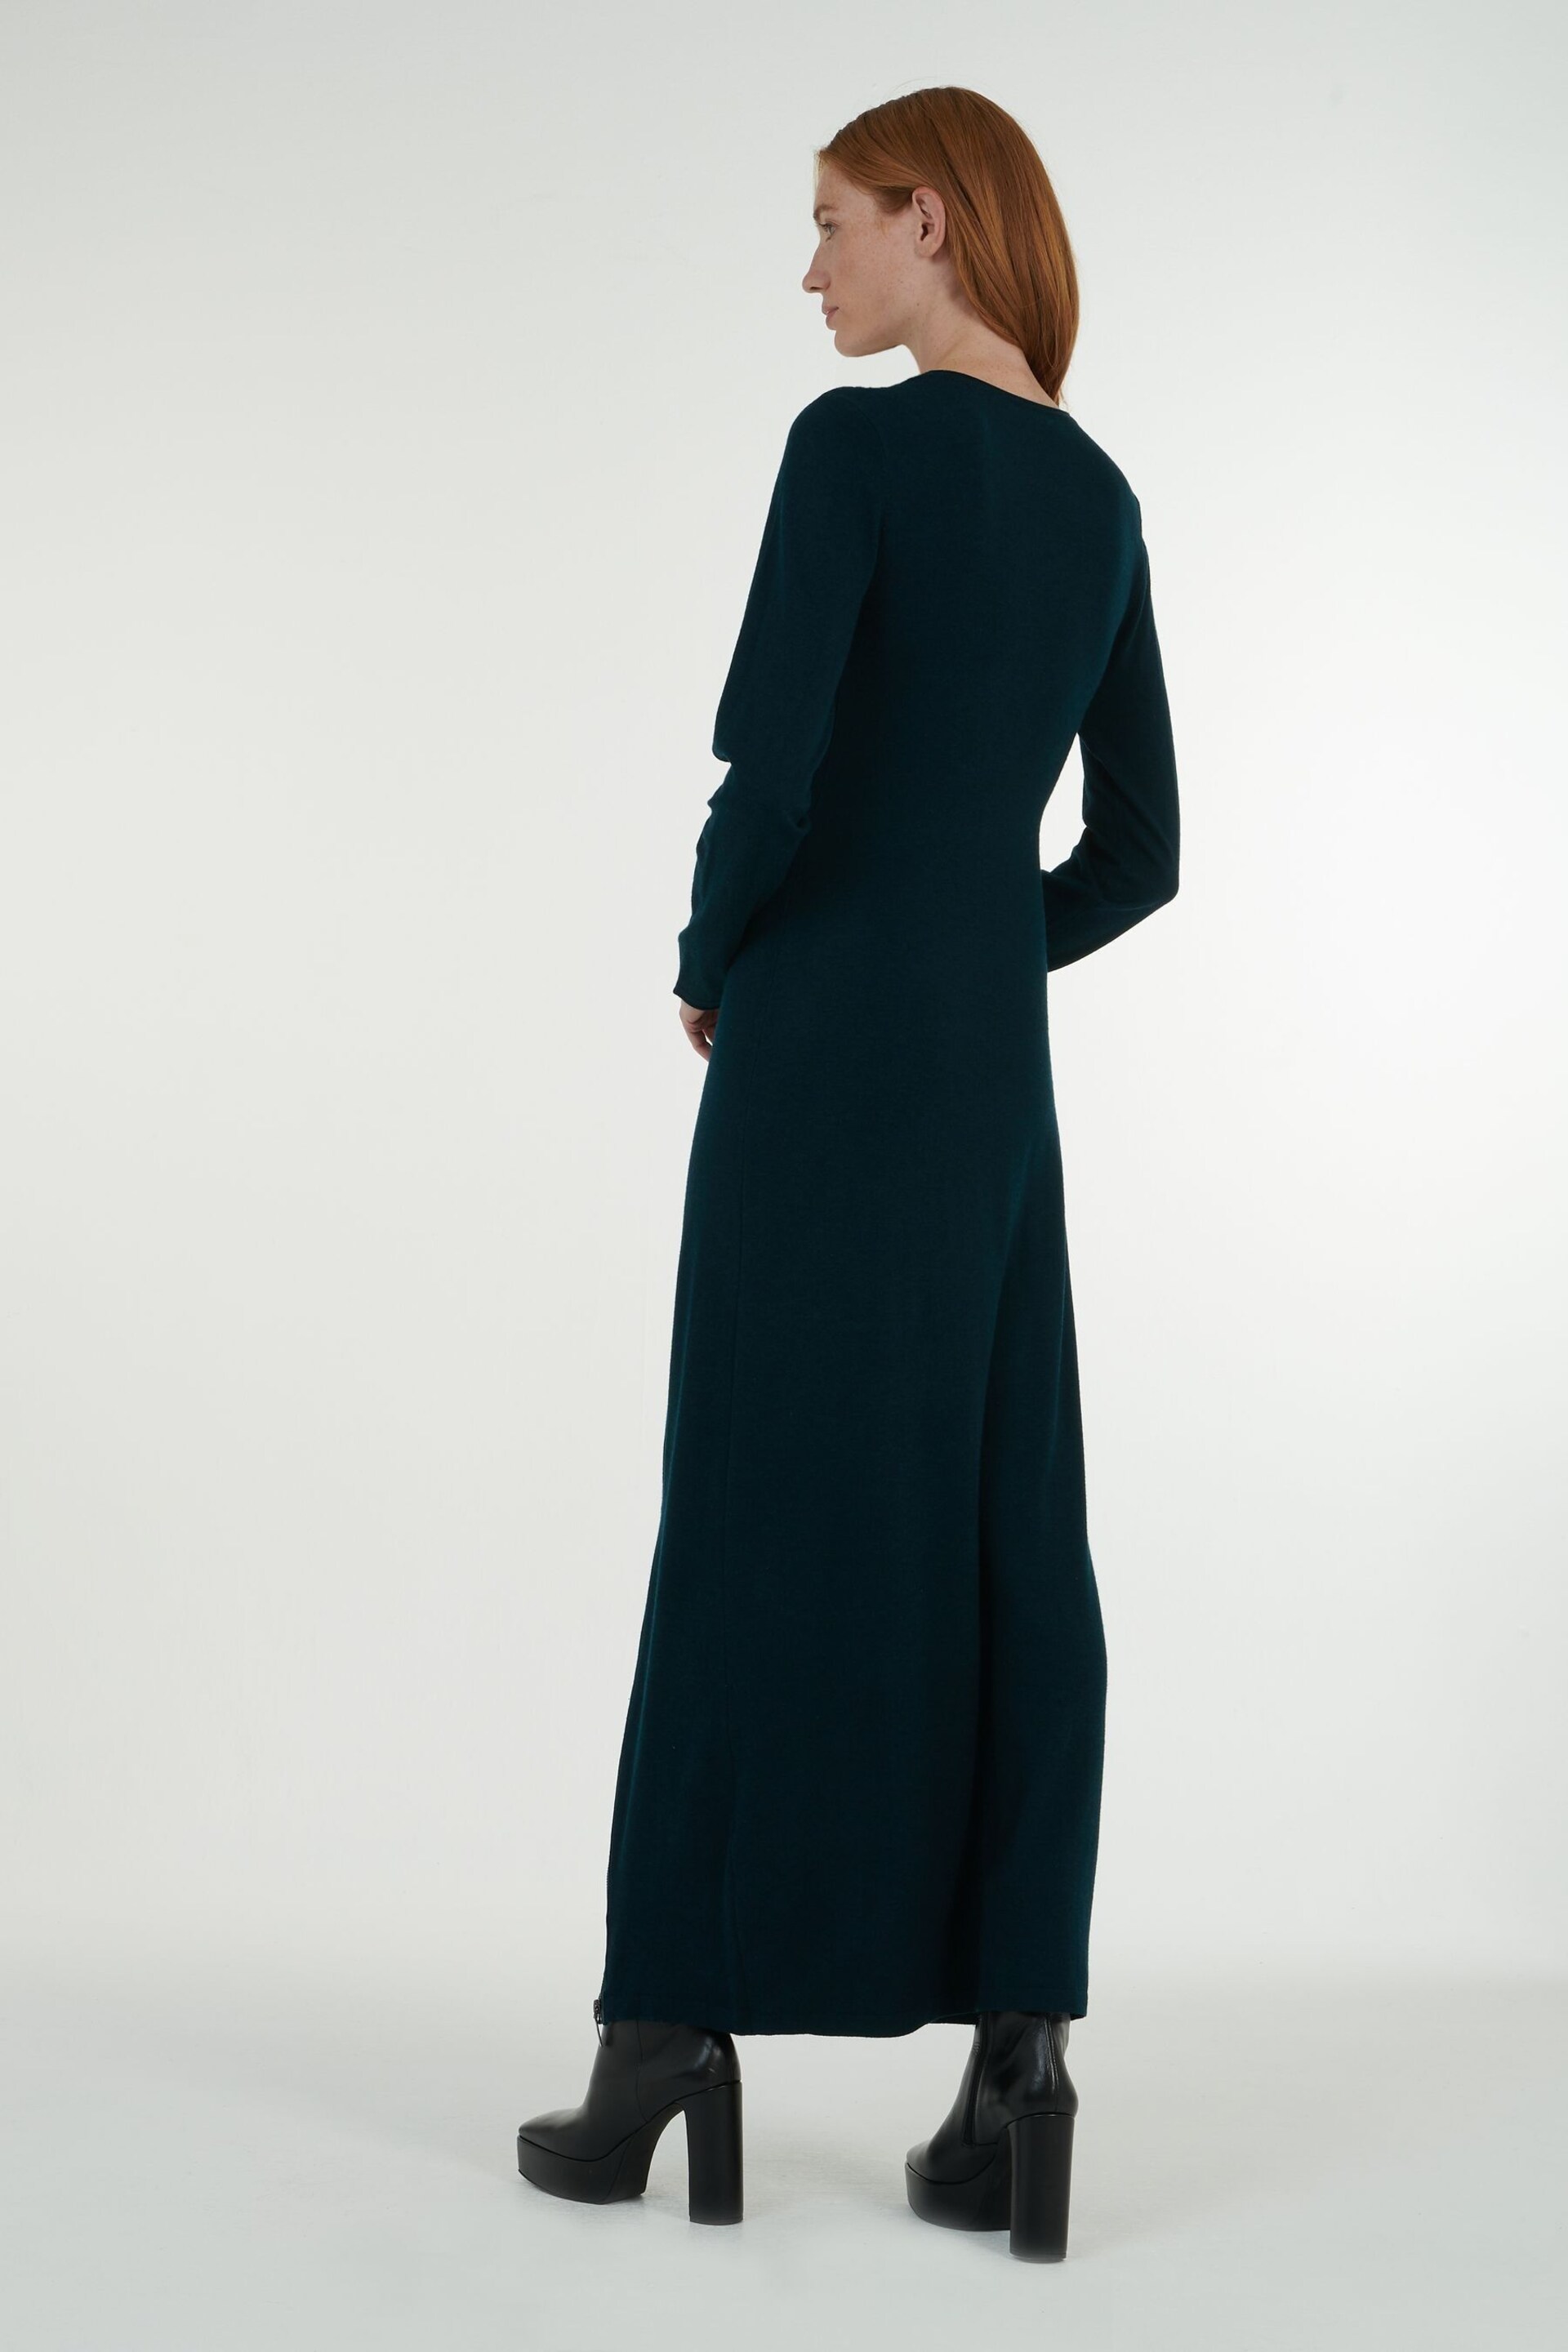 leem Green Full-Length Knitted Dress - Image 4 of 6